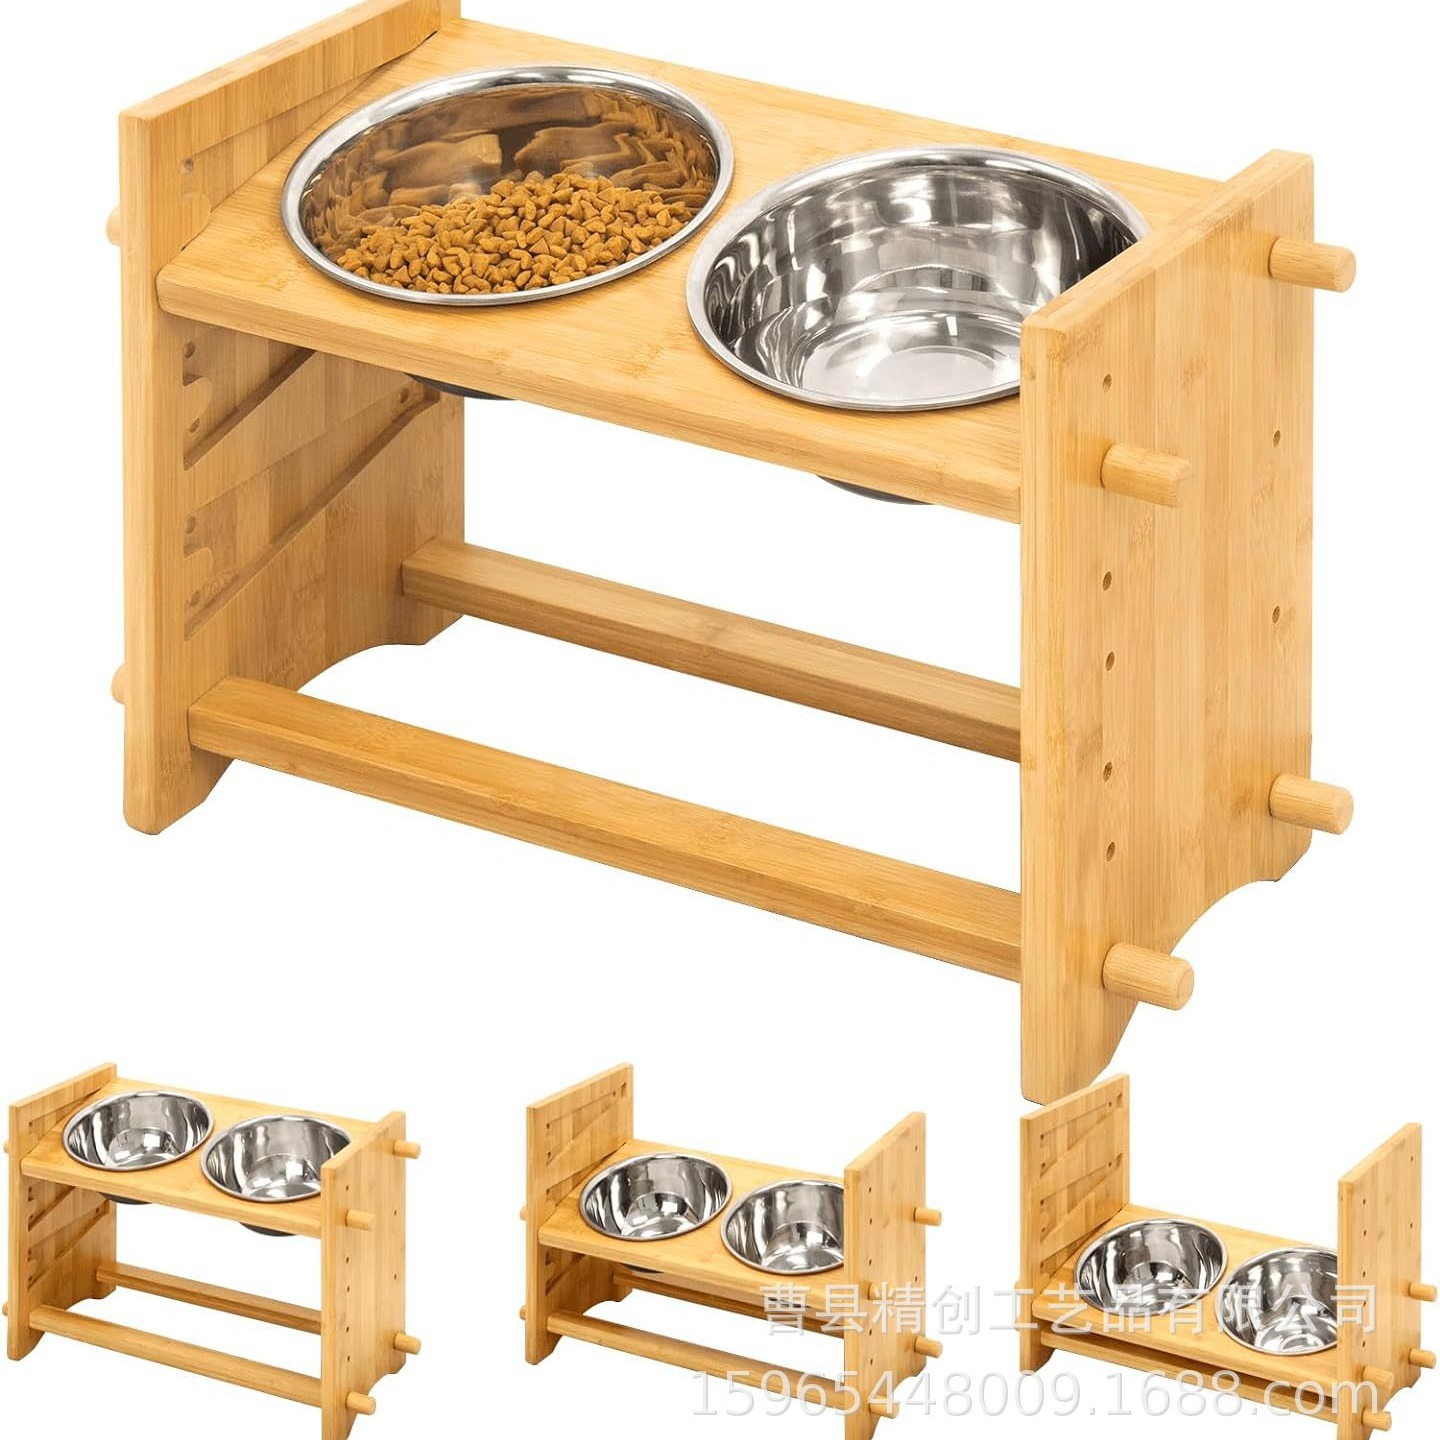 木制宠物碗架可调节高度式木制狗碗支架狗碗增高架狗狗食碗支架